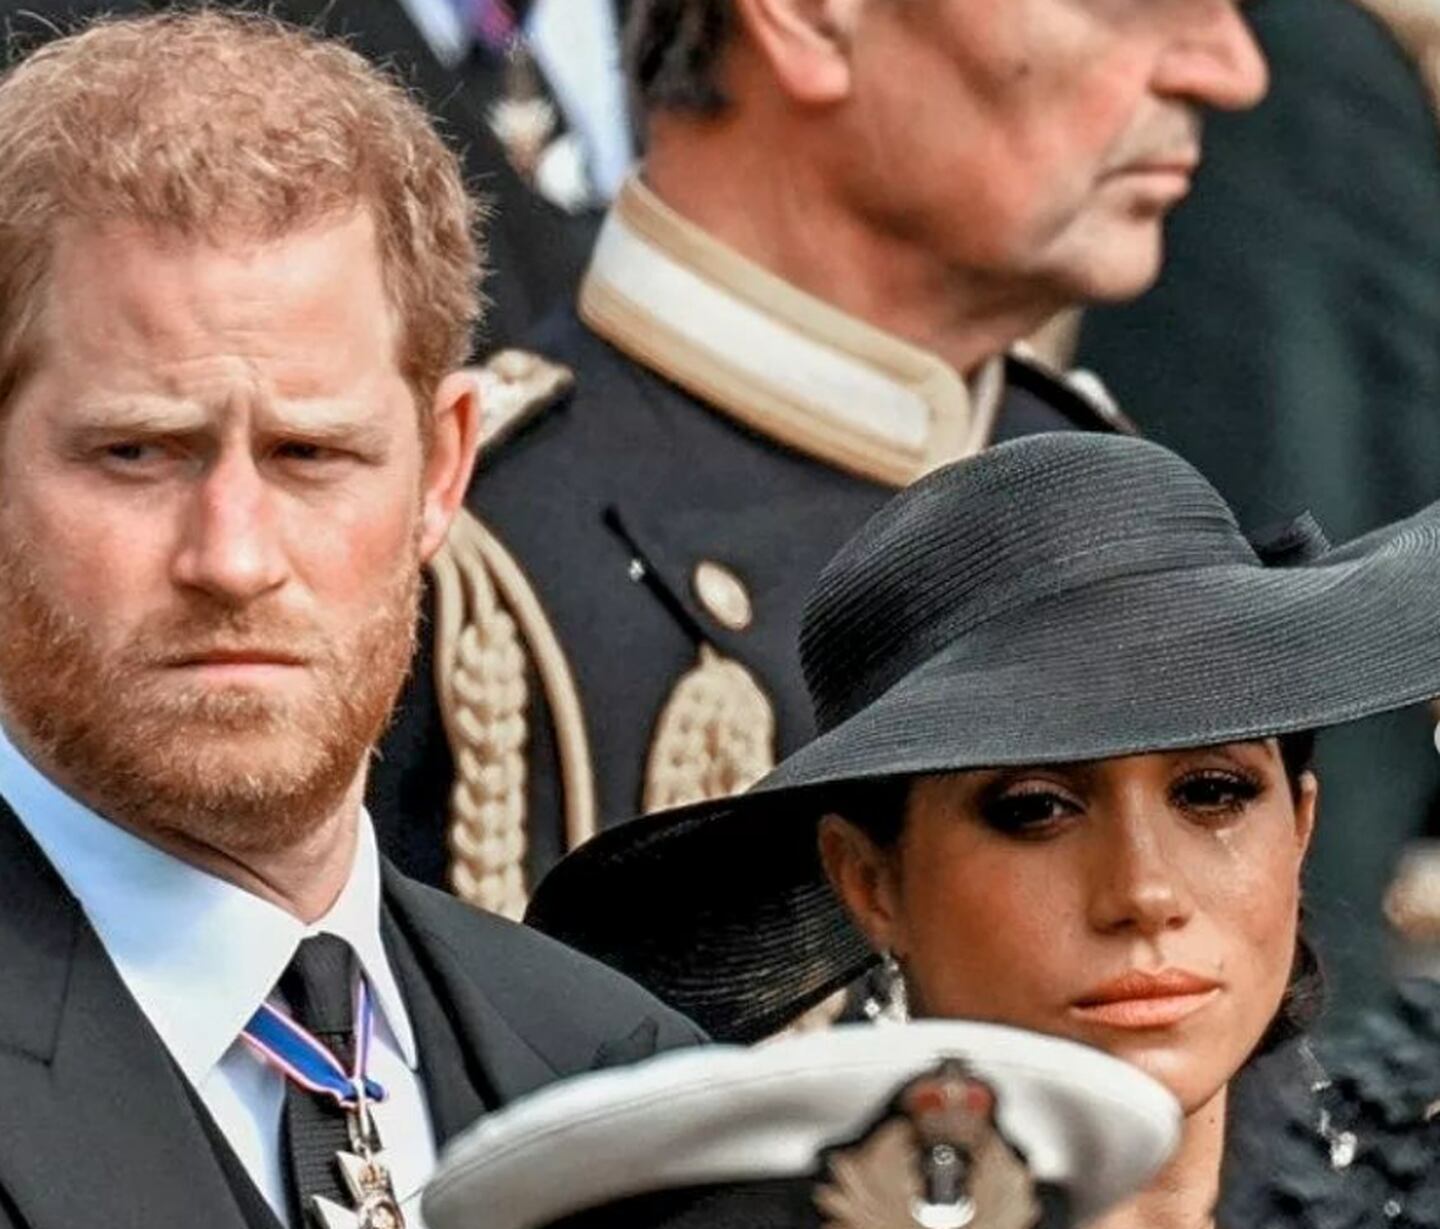 Príncipe Harry e Meghan Markle durante funeral da rainha Elizabeth II
Foto: @meghandharry